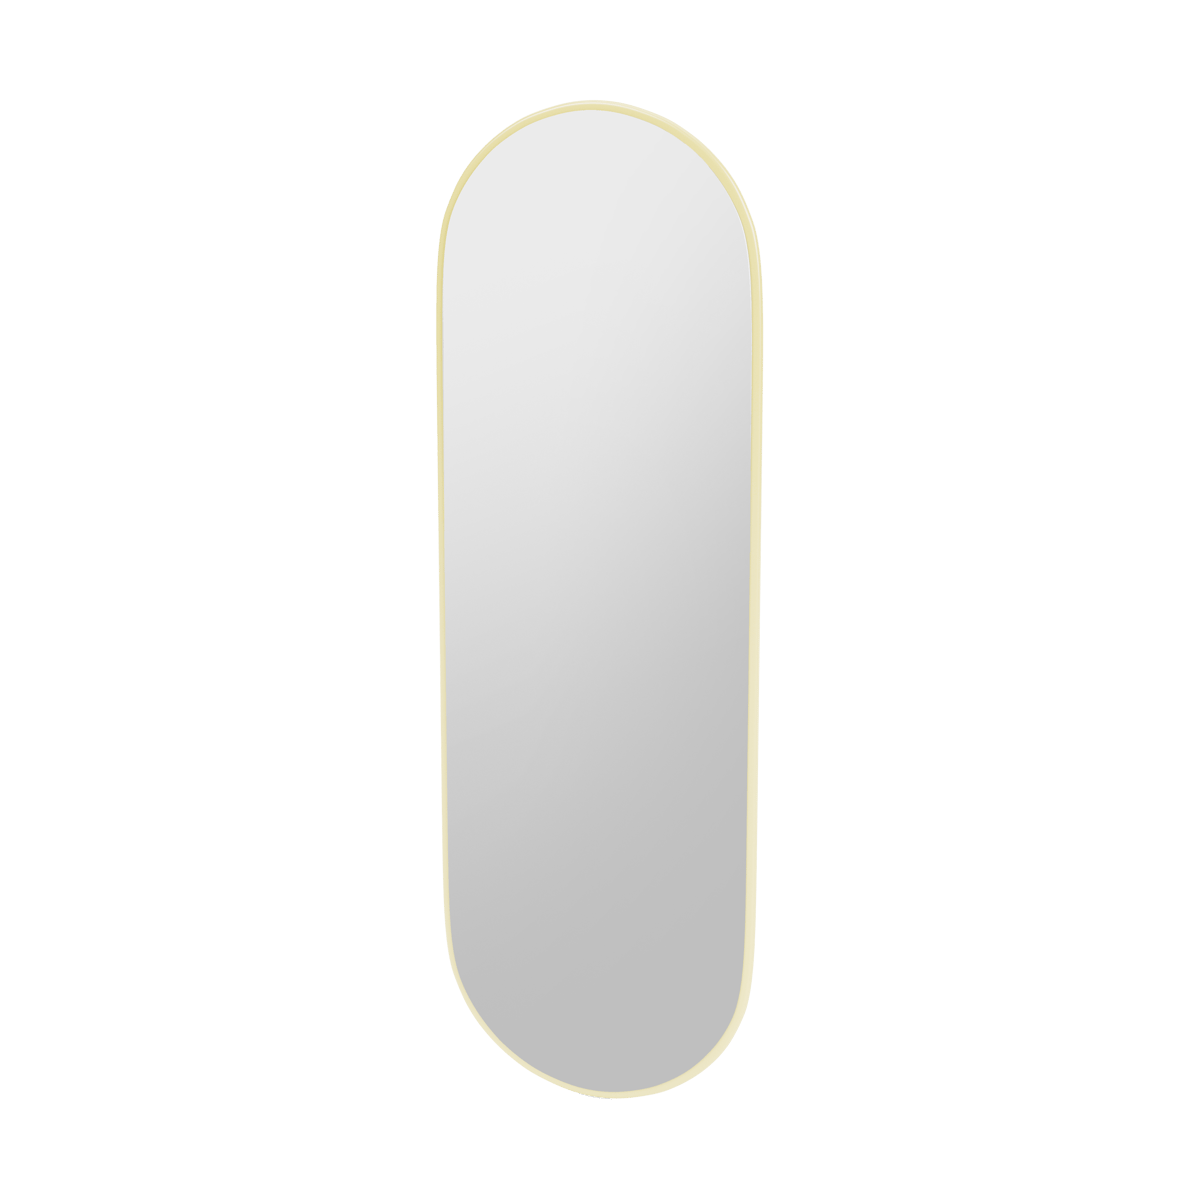 Montana FIGUUR Mirror Spiegel - SP824R Camomile